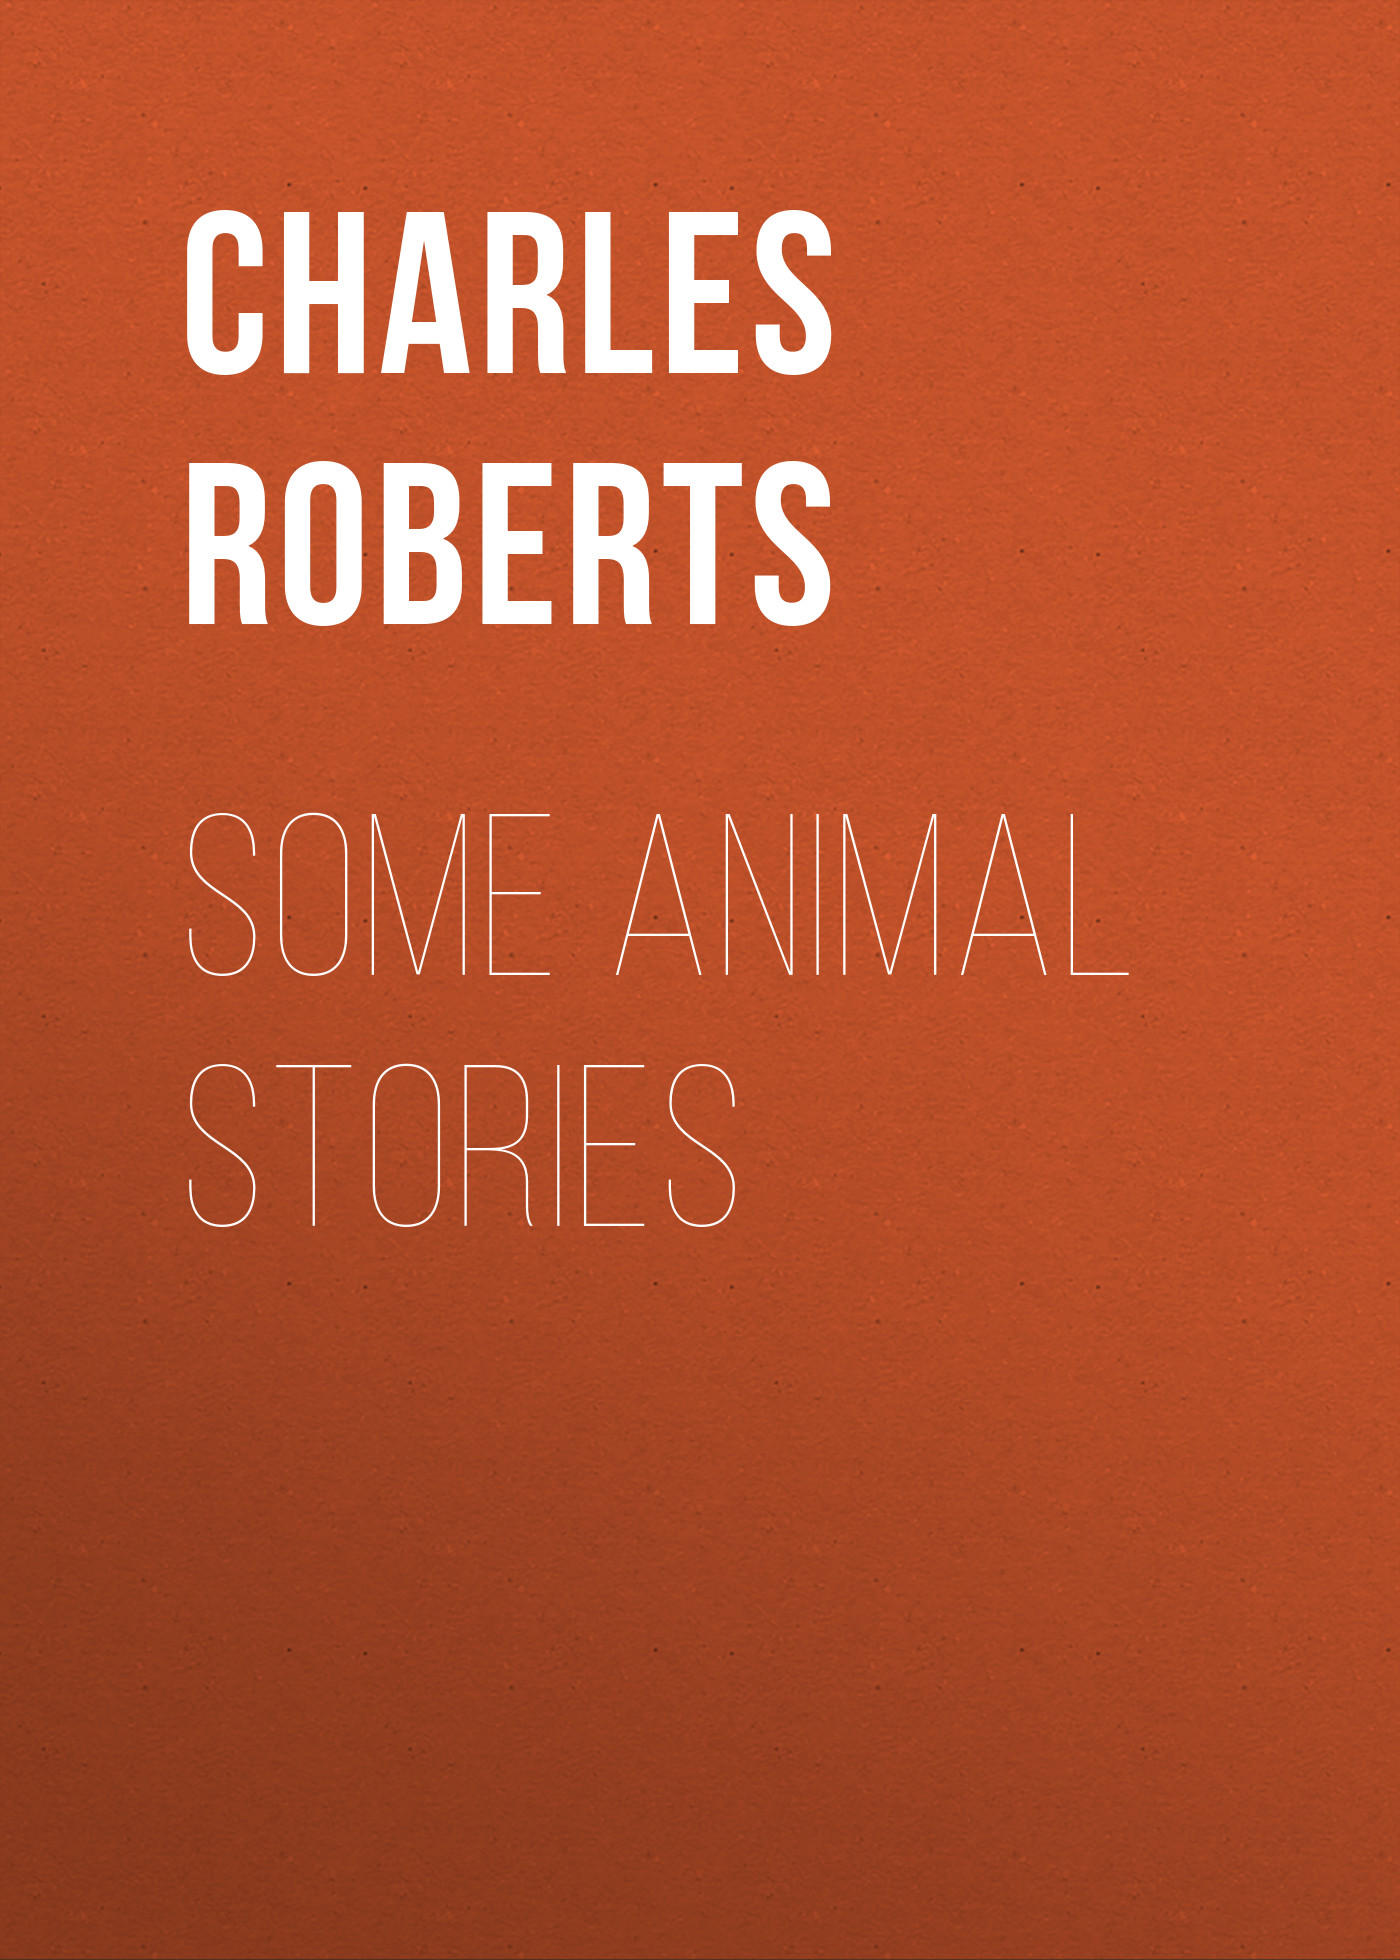 Книга Some Animal Stories из серии , созданная Charles Roberts, может относится к жанру Иностранные языки, Зарубежная классика. Стоимость электронной книги Some Animal Stories с идентификатором 23171867 составляет 5.99 руб.